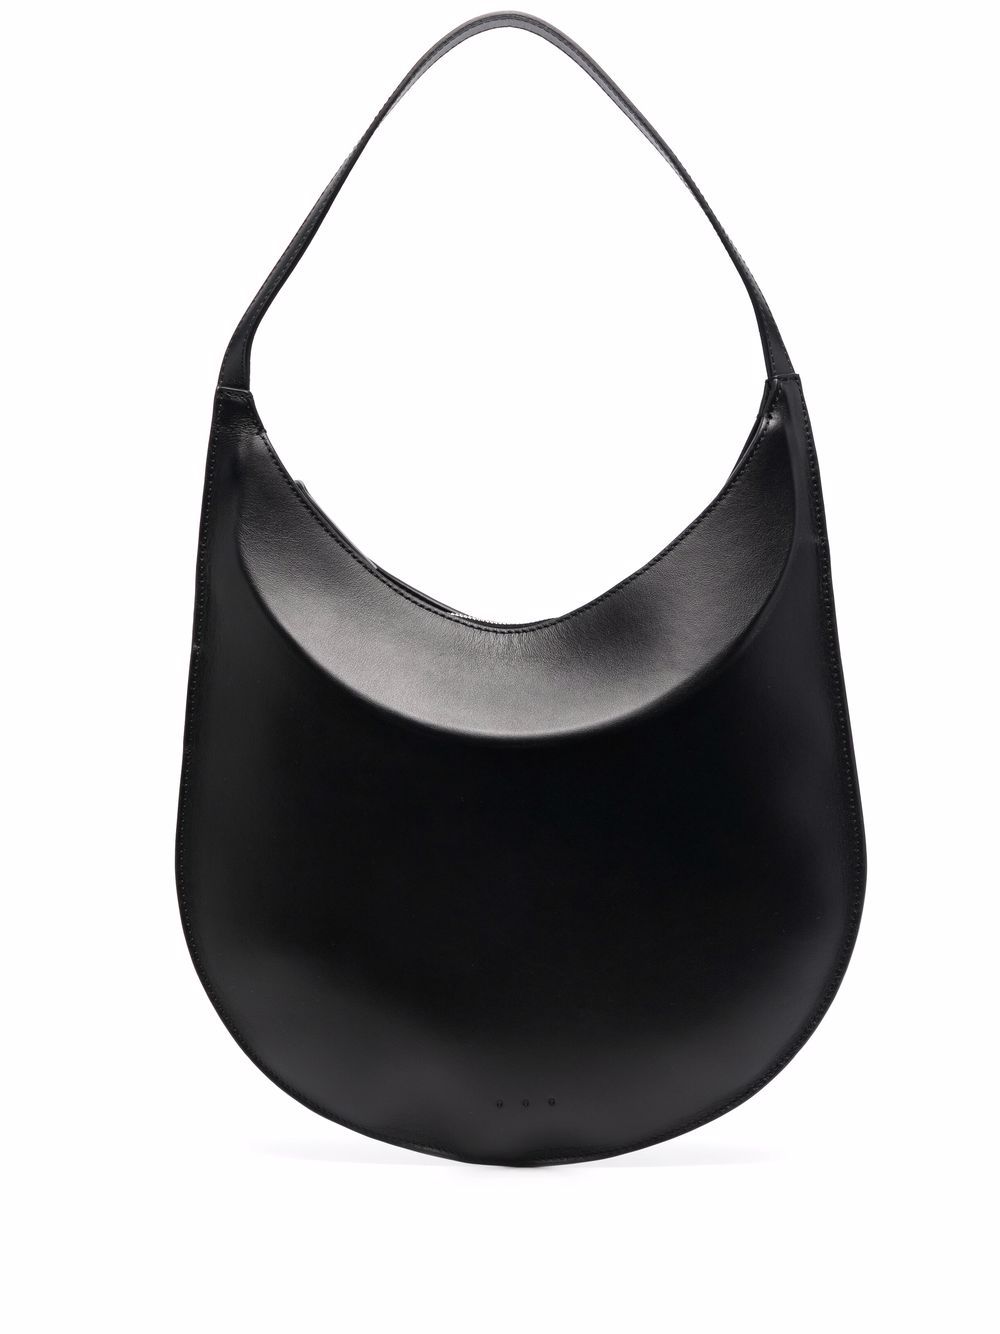 AESTHER EKME Flat Hobo Smooth Leather Shoulder Bag - Black